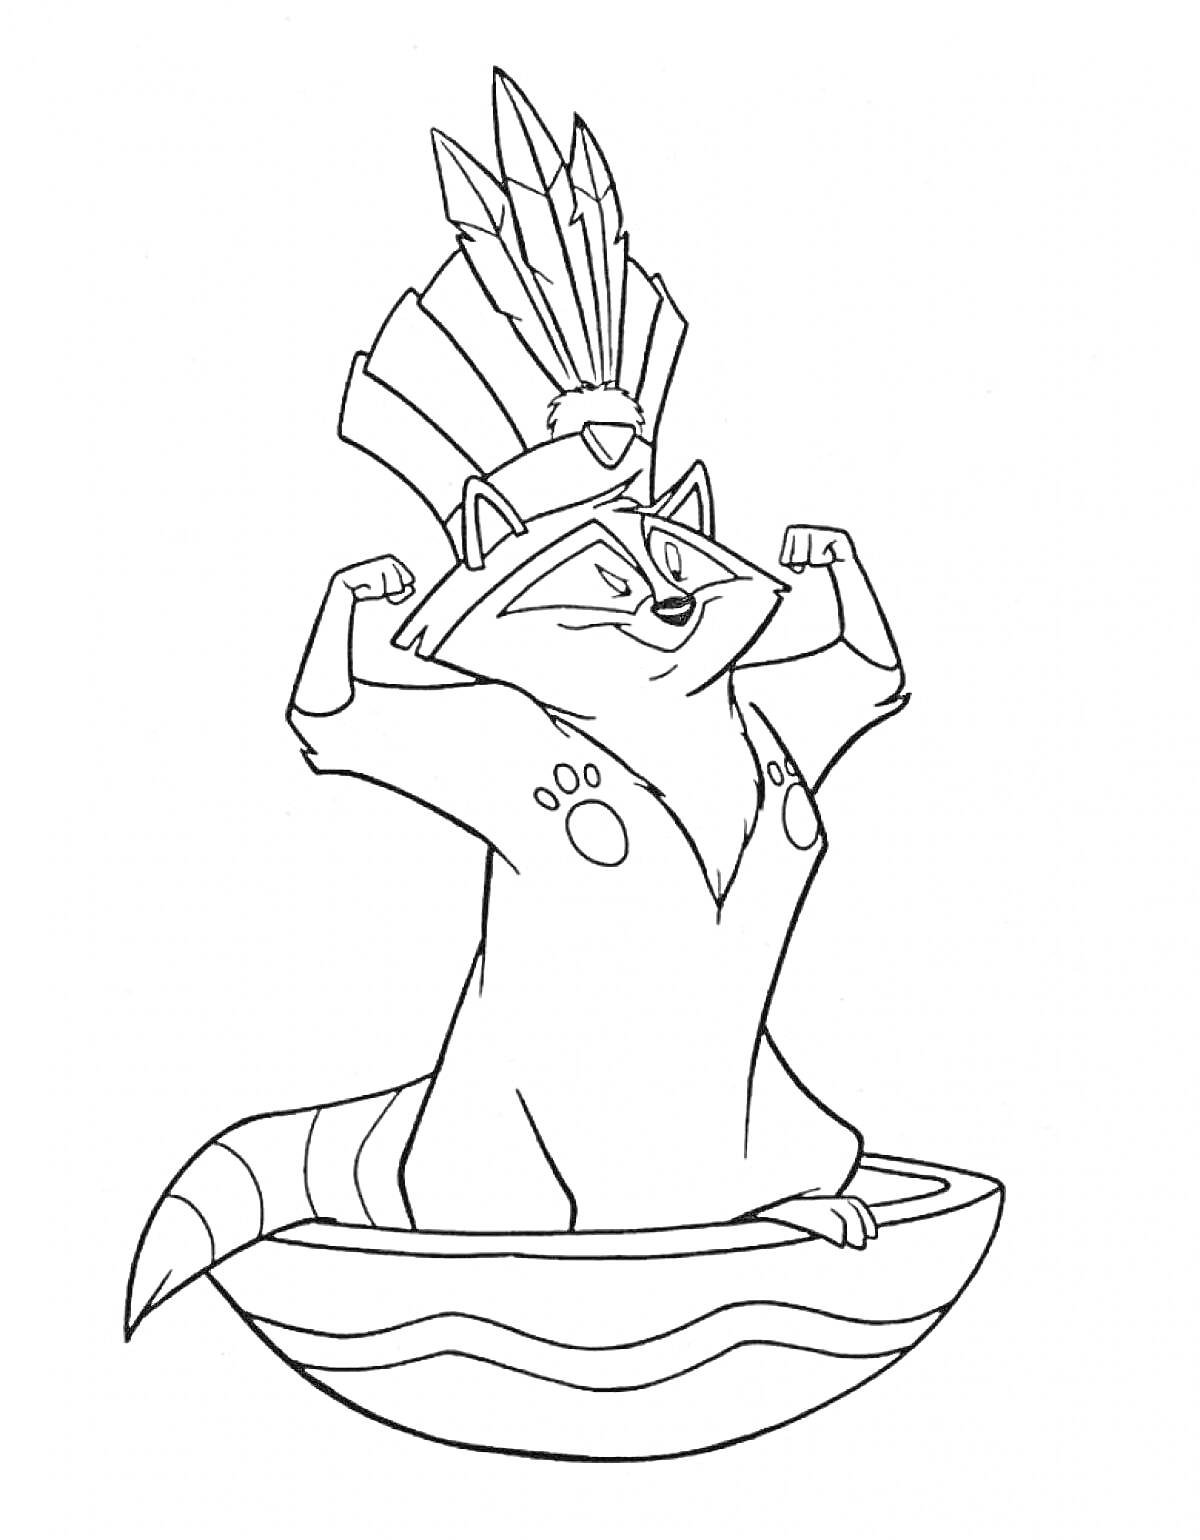 Раскраска Енот в головном уборе с перьями сидит в лодке и показывает мускулы